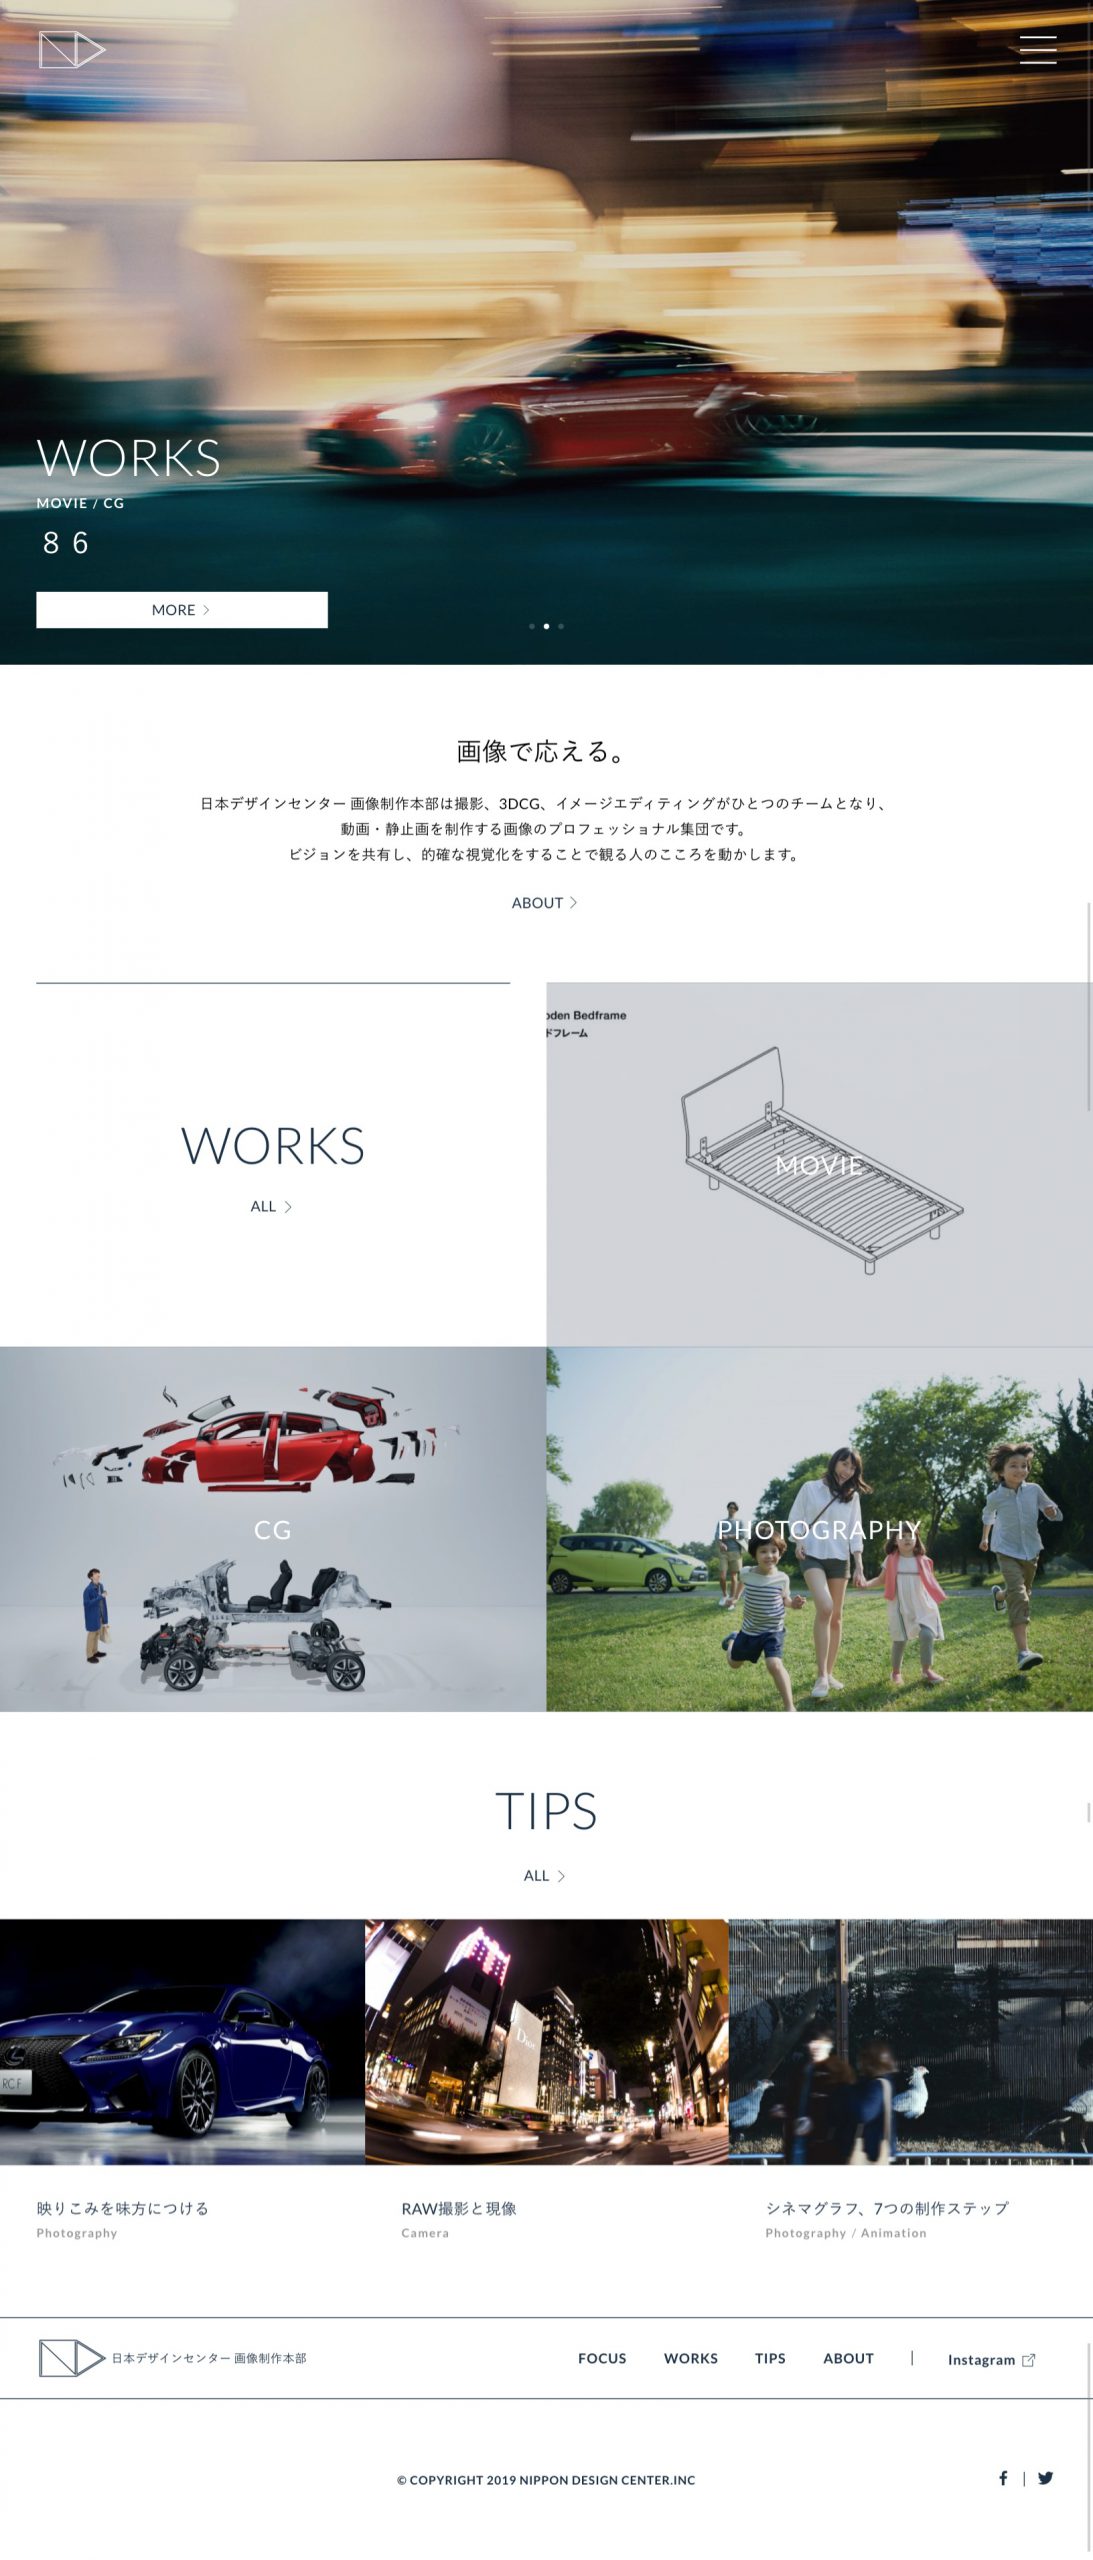 デザイン・制作会社・印刷 コーポレートサイト制作 WEBデザイン参考ギャラリー 日本デザインセンター